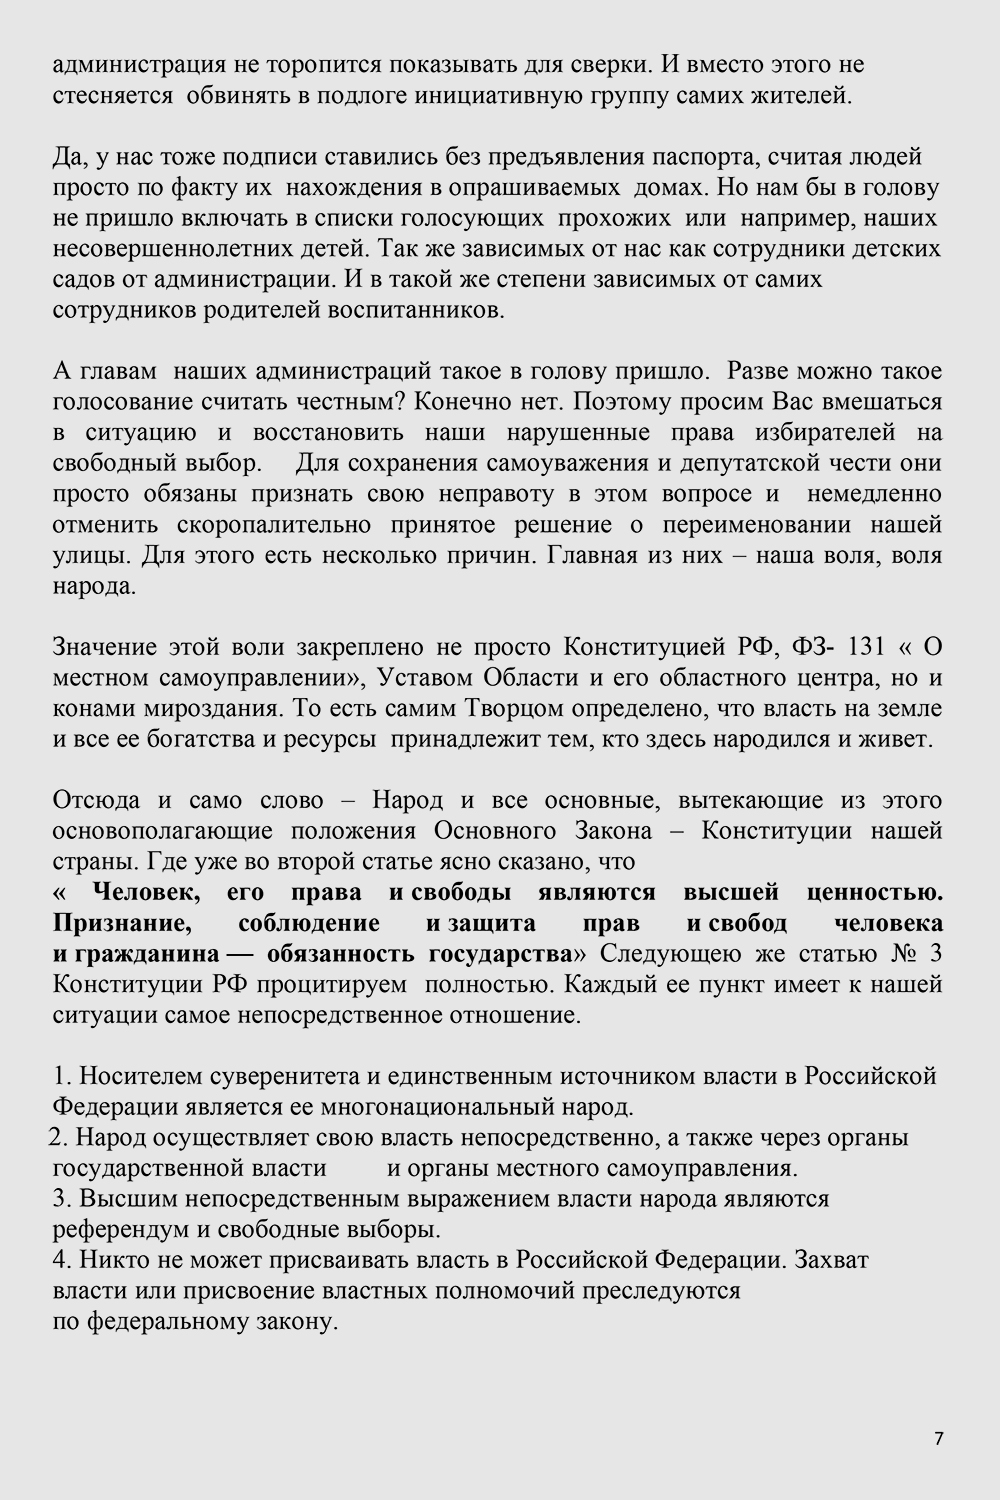 Обращение к губернатору Владимирской области -7.jpg